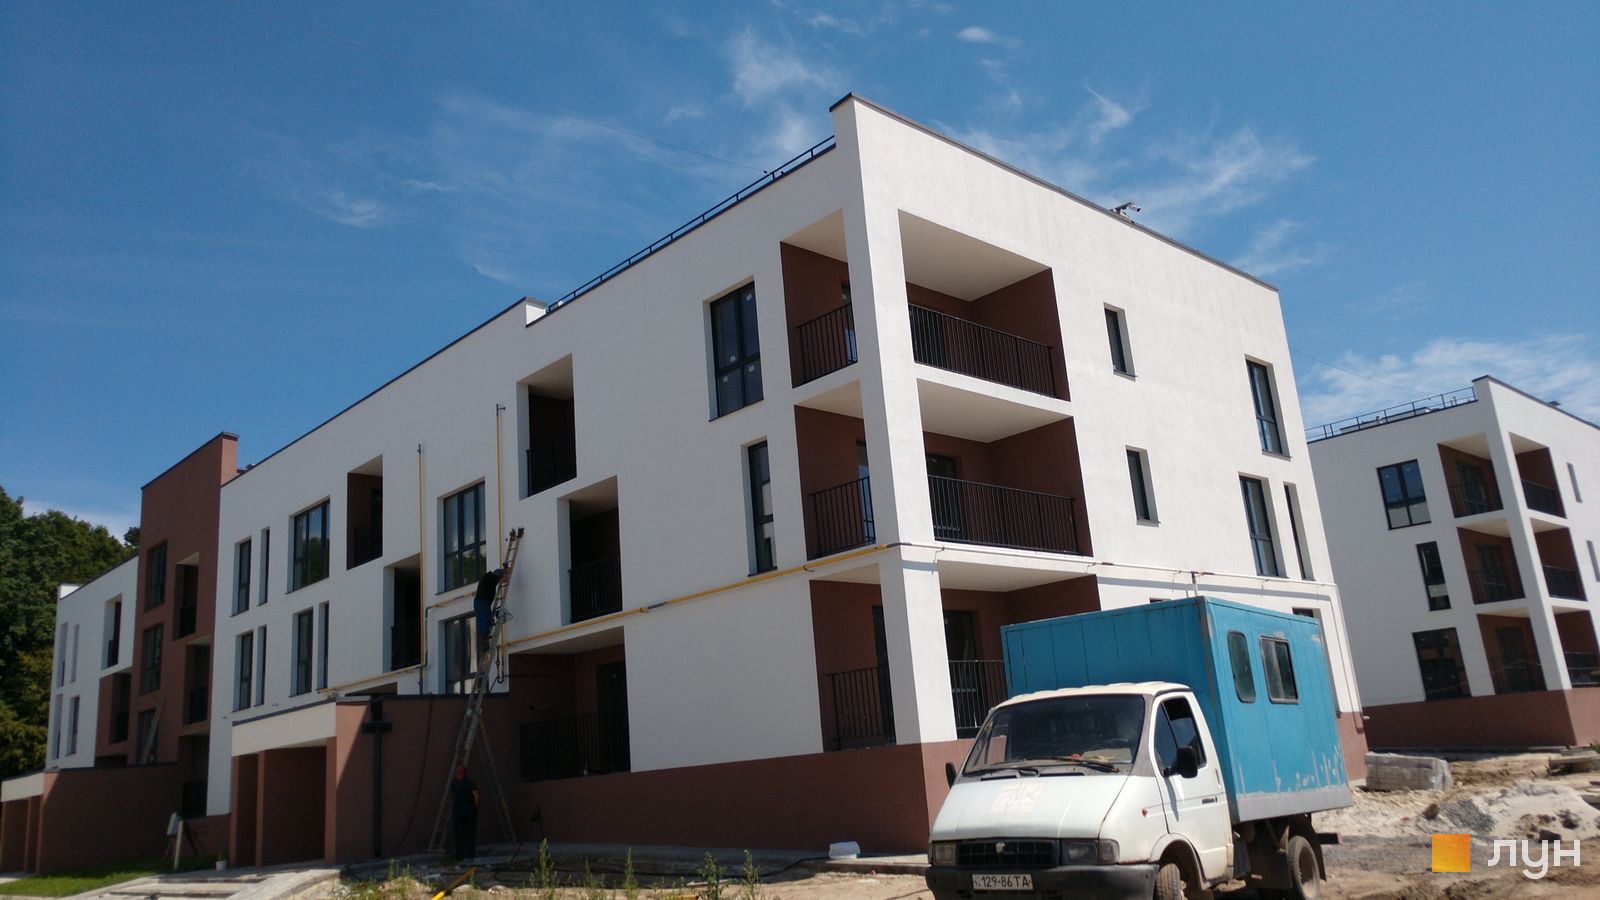 Моніторинг будівництва ЖК Еко-дім на Надійній - Ракурс 5, липень 2022